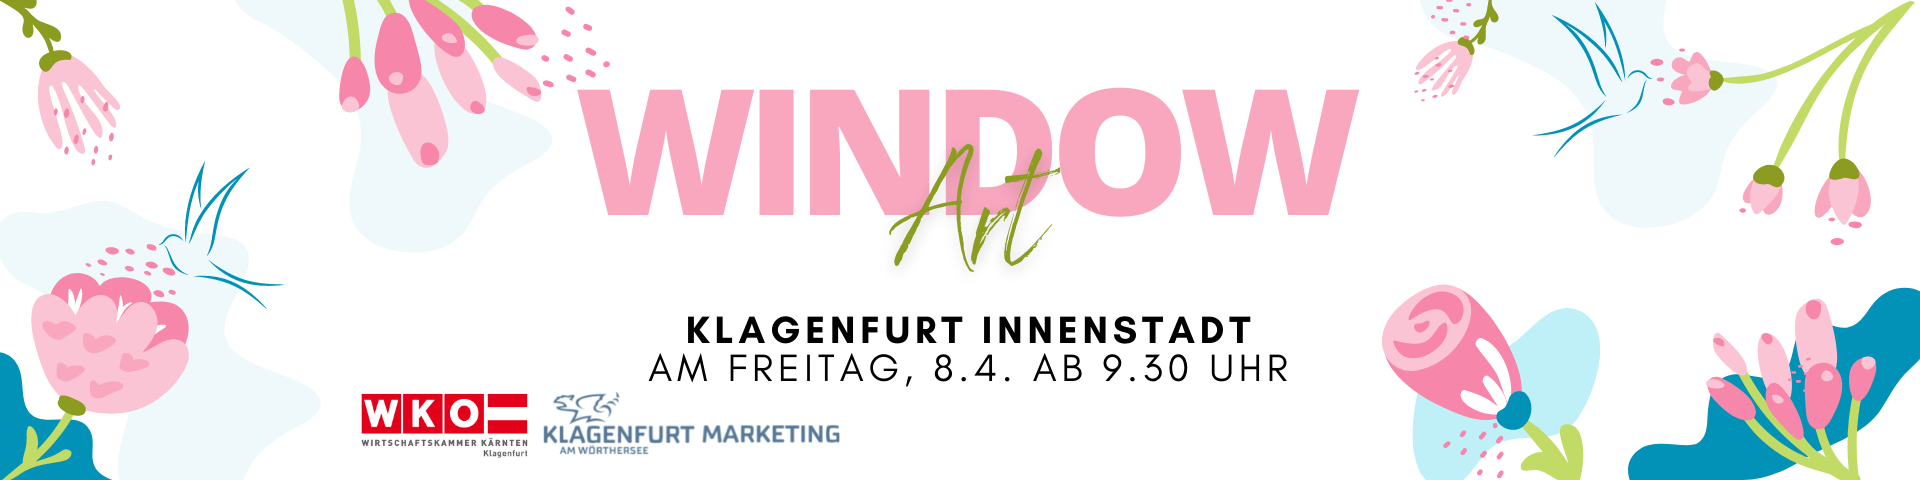 Window Art, Klagenfurt Innenstadt